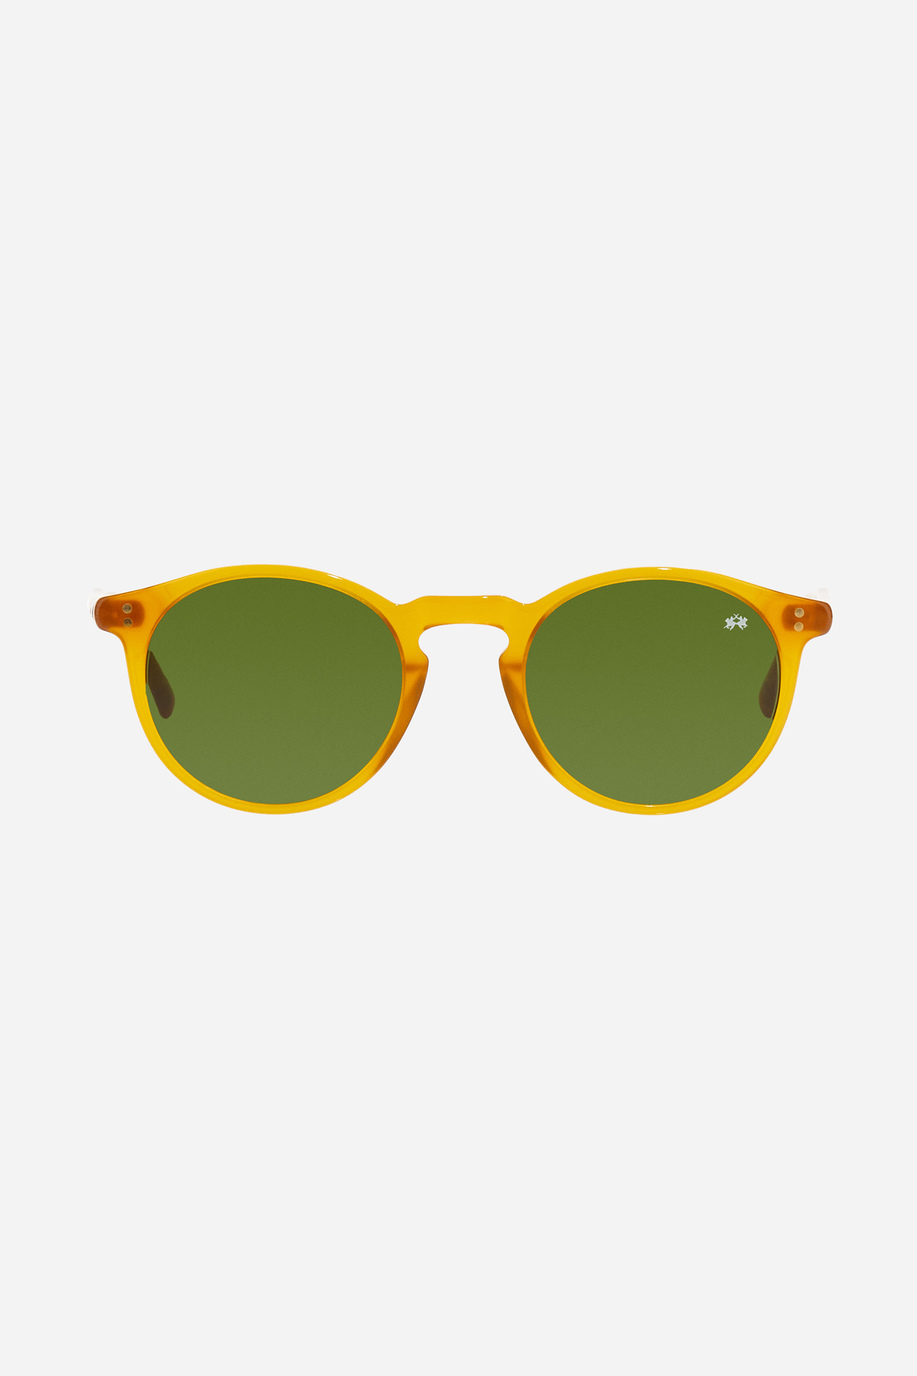 Round model men's sunglasses - Preview | La Martina - Official Online Shop